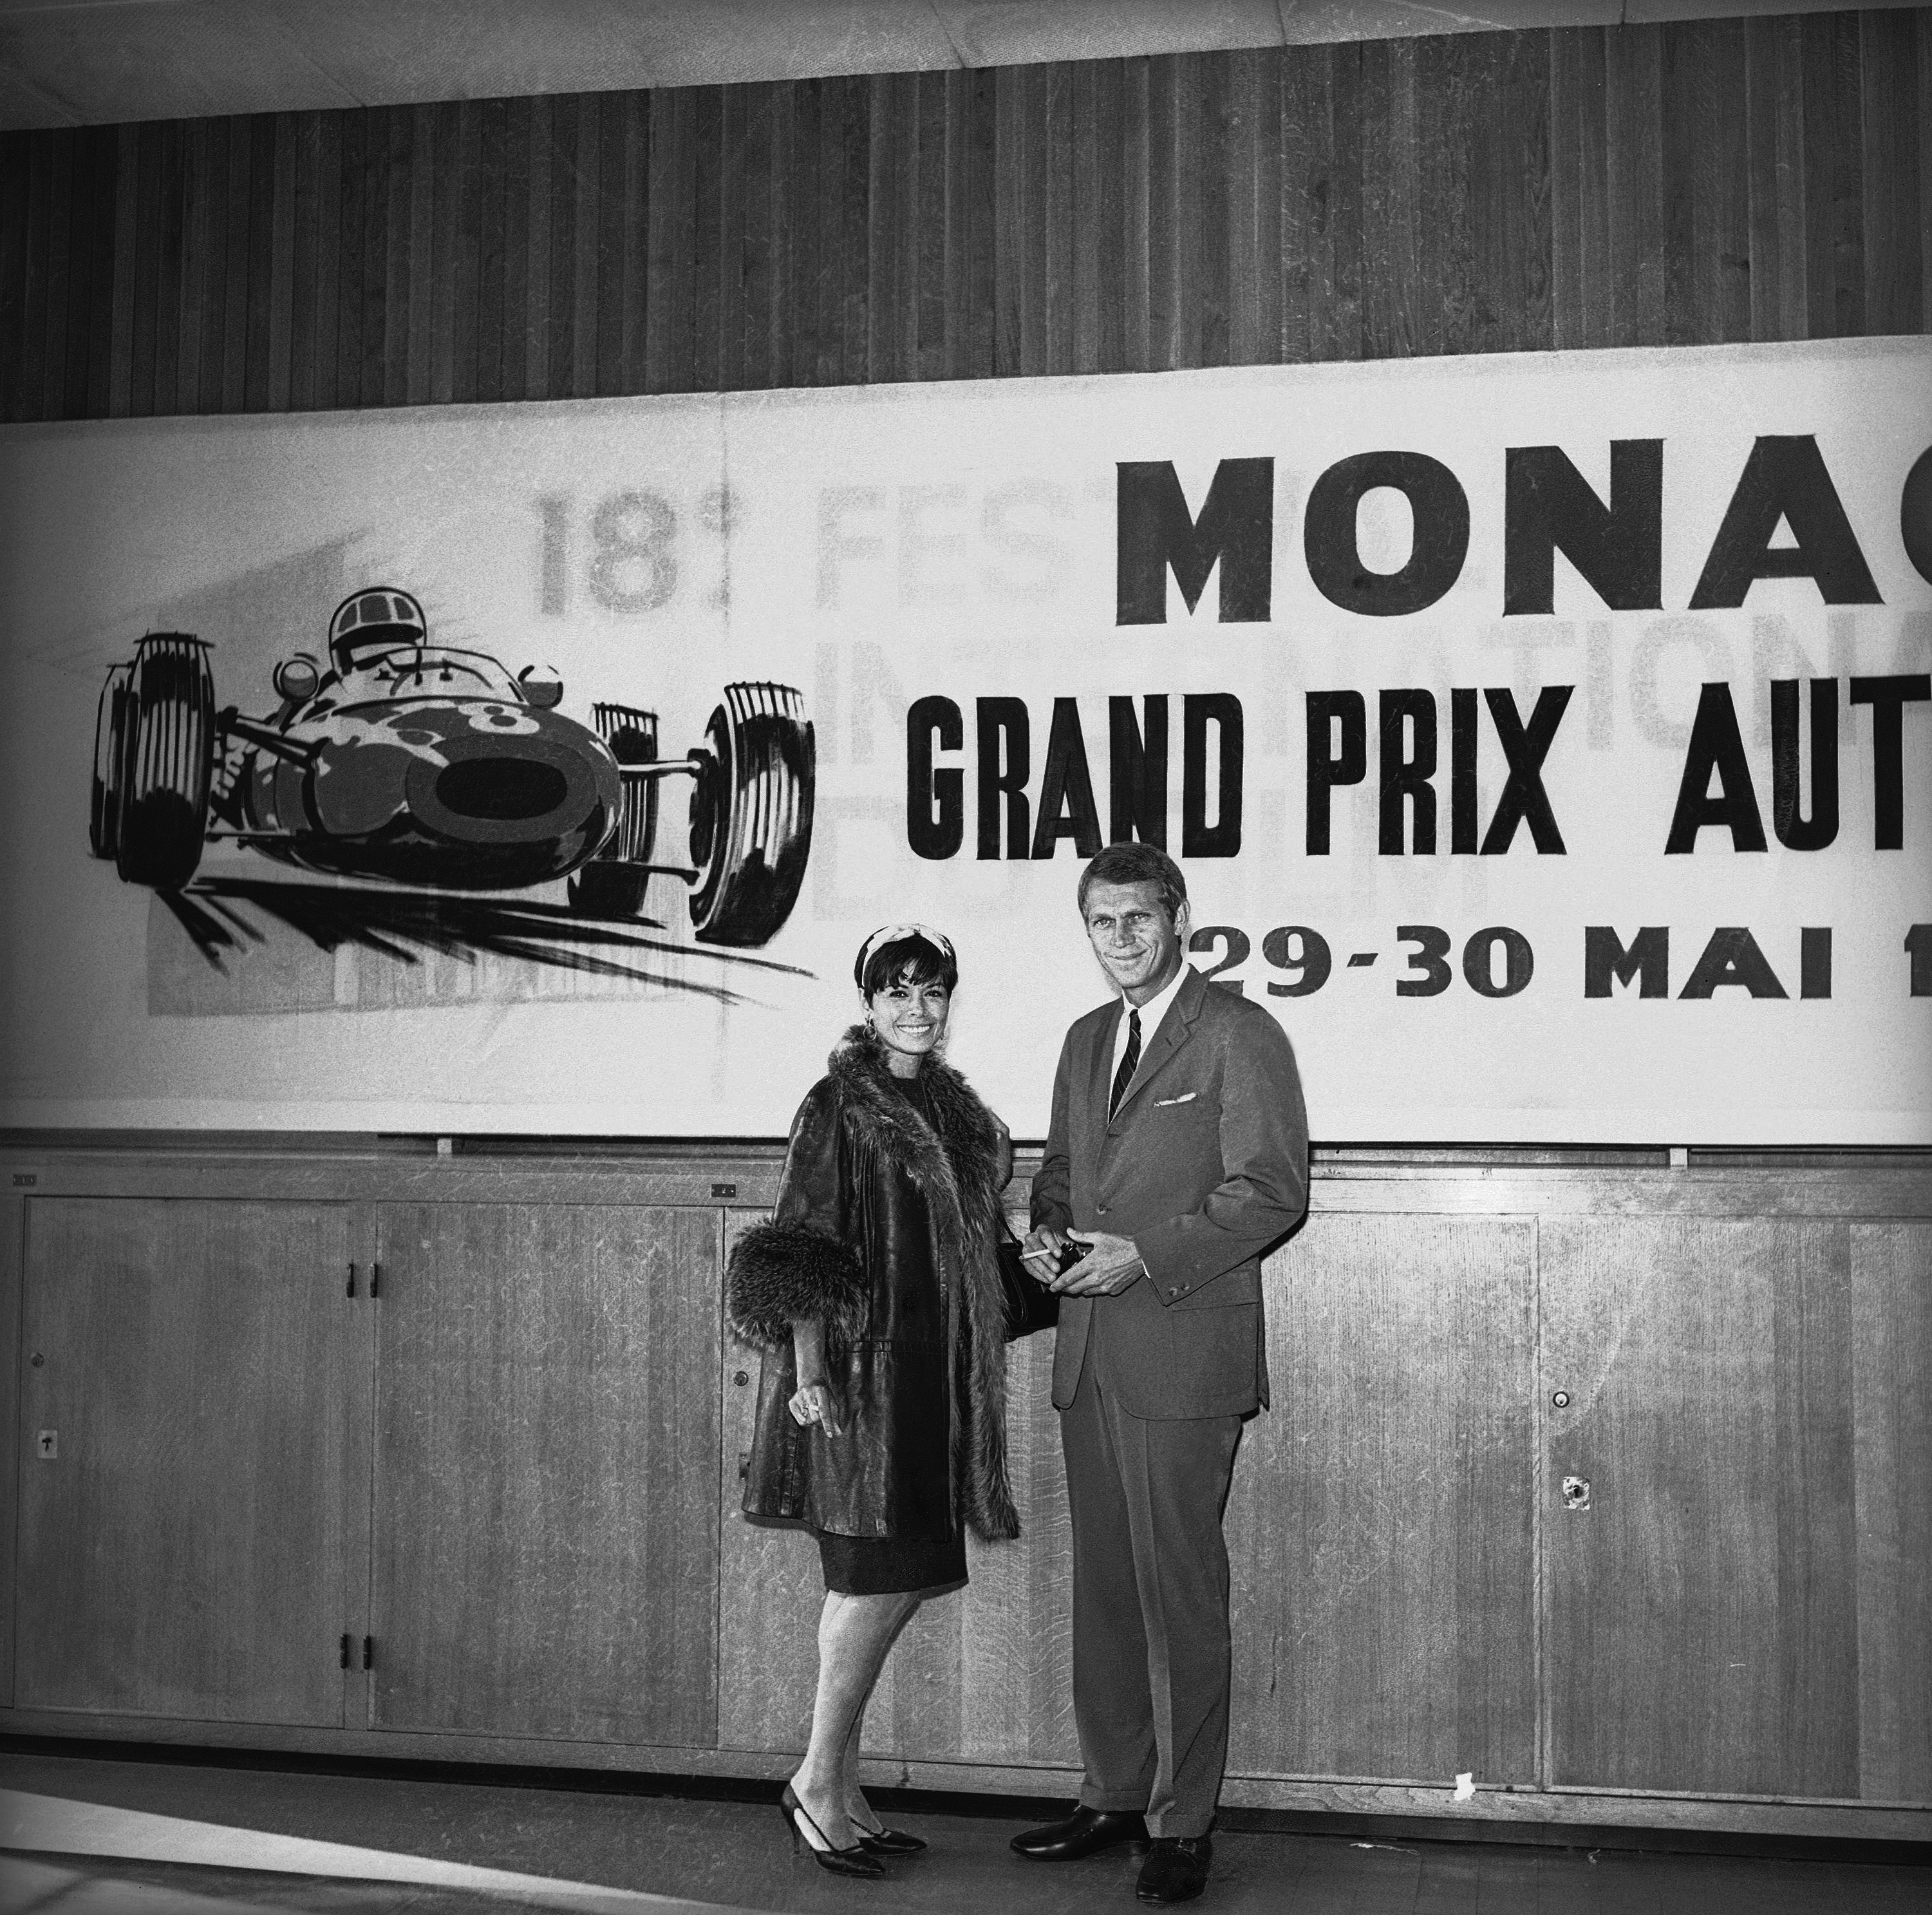 Grand Prix Μονακό: Ενας άλλος κόσμος